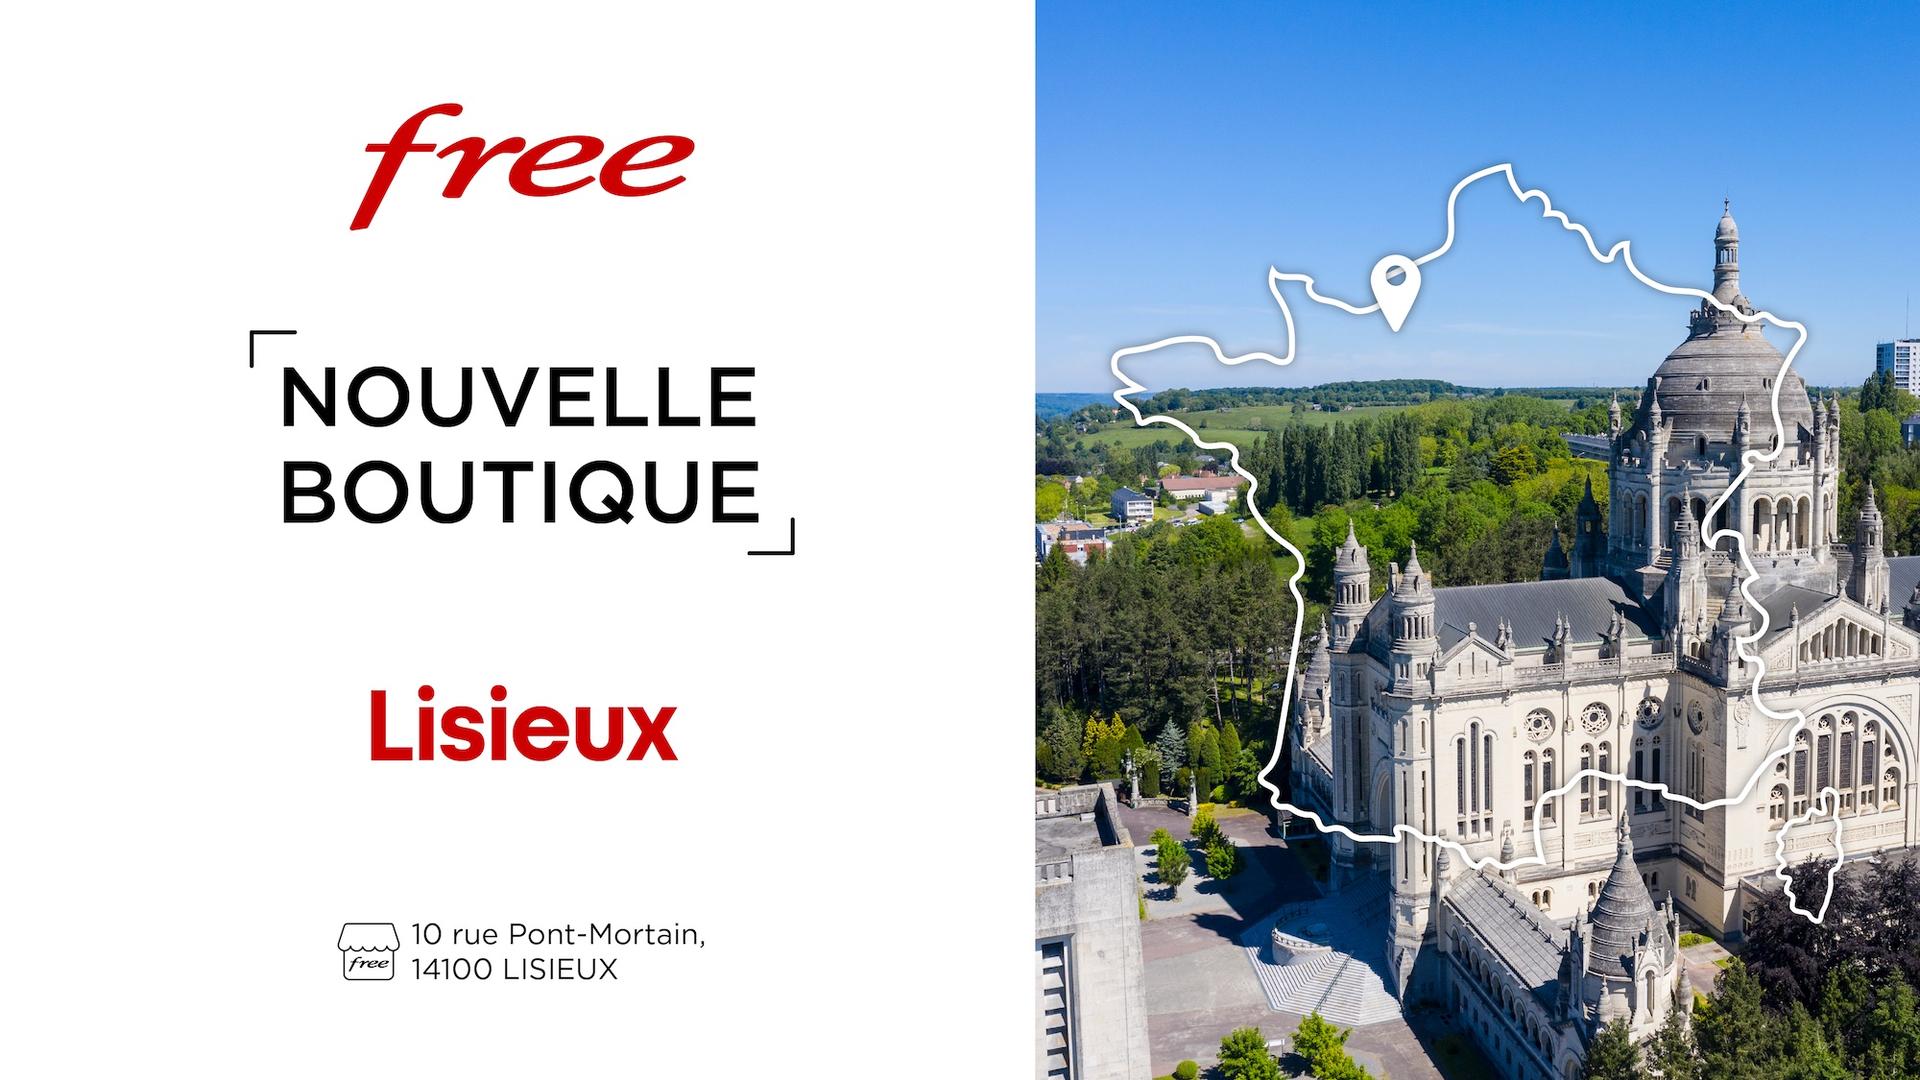 Découvrez la nouvelle boutique Free de Lisieux